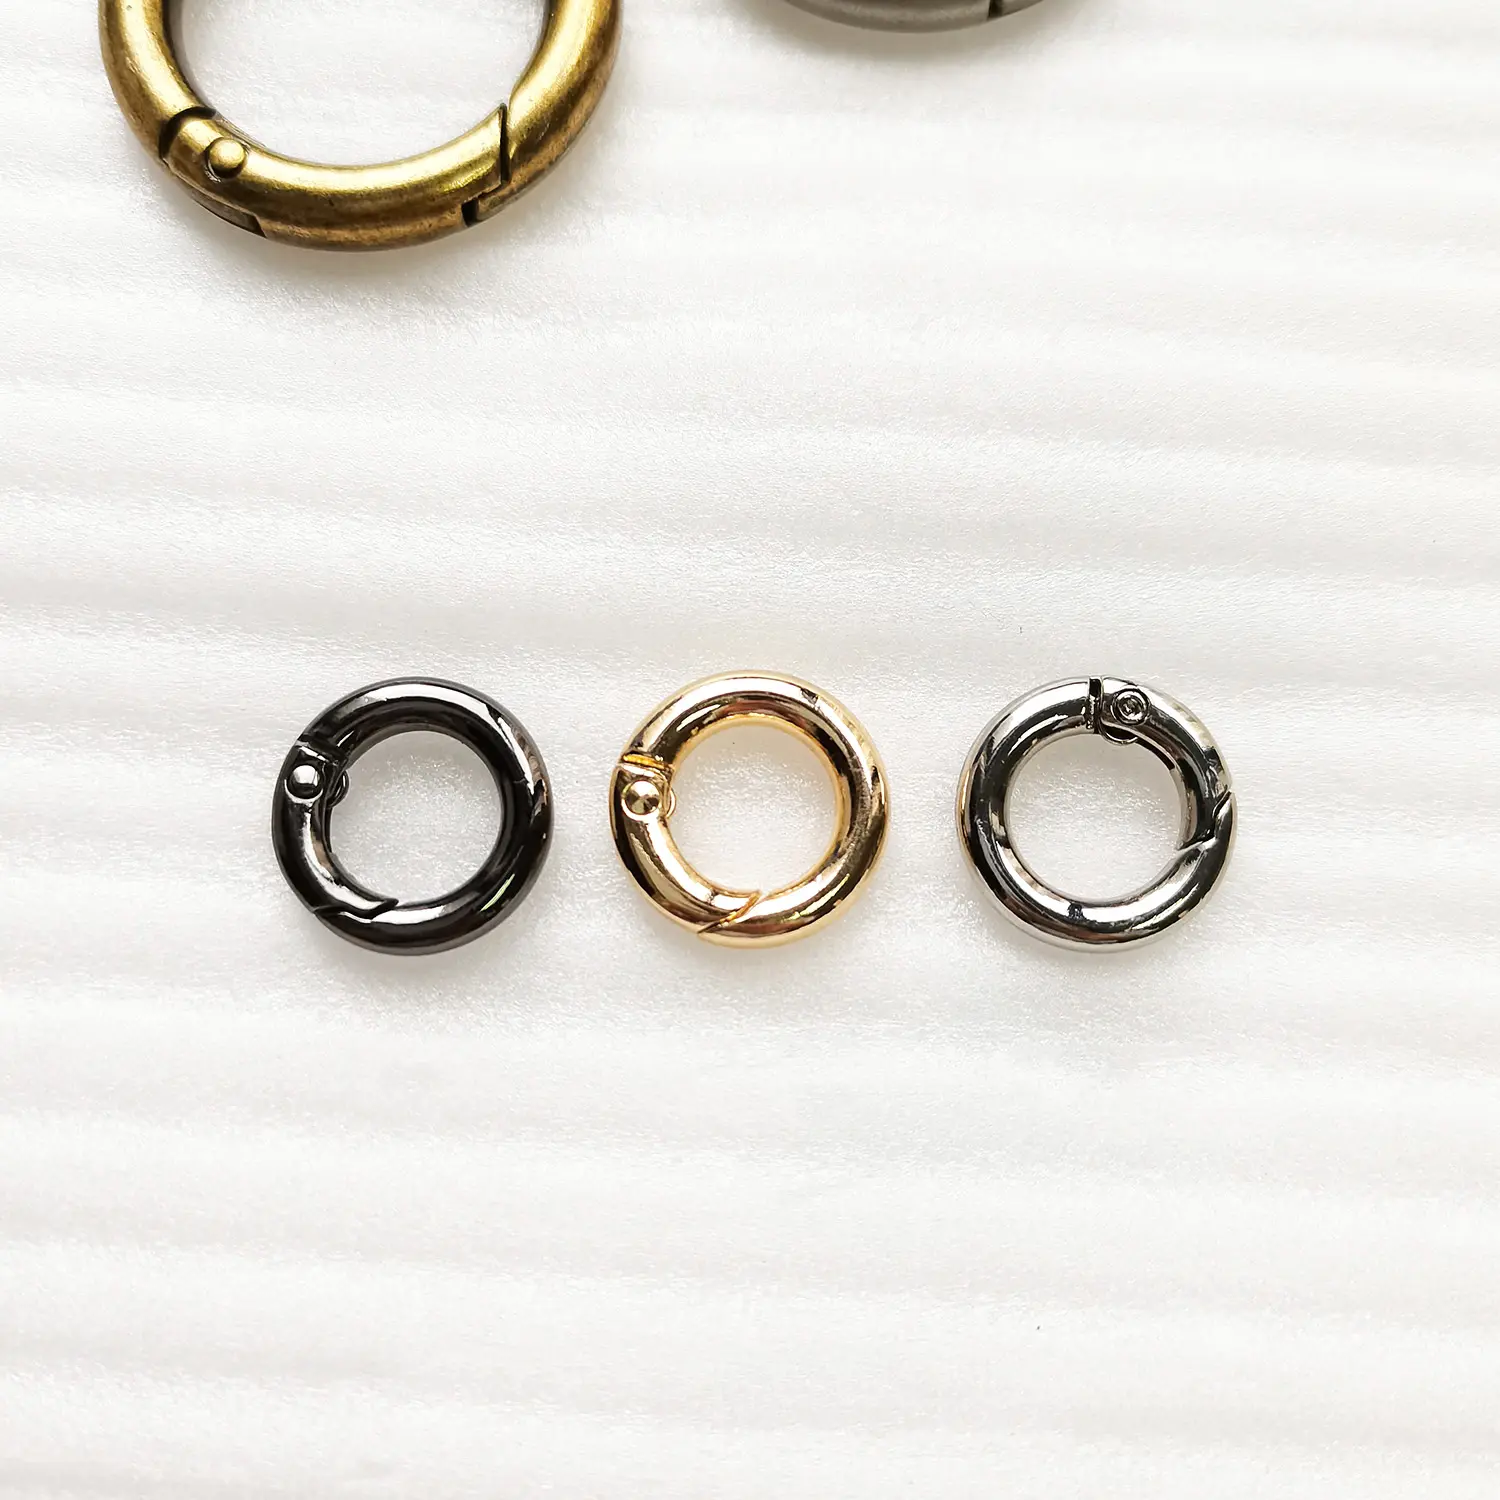 Glänzende Hardware-Tasche Zubehör Metall hängen Gold O-Ring für moderne Stadt Frauen Handtaschen Männer Rucksack